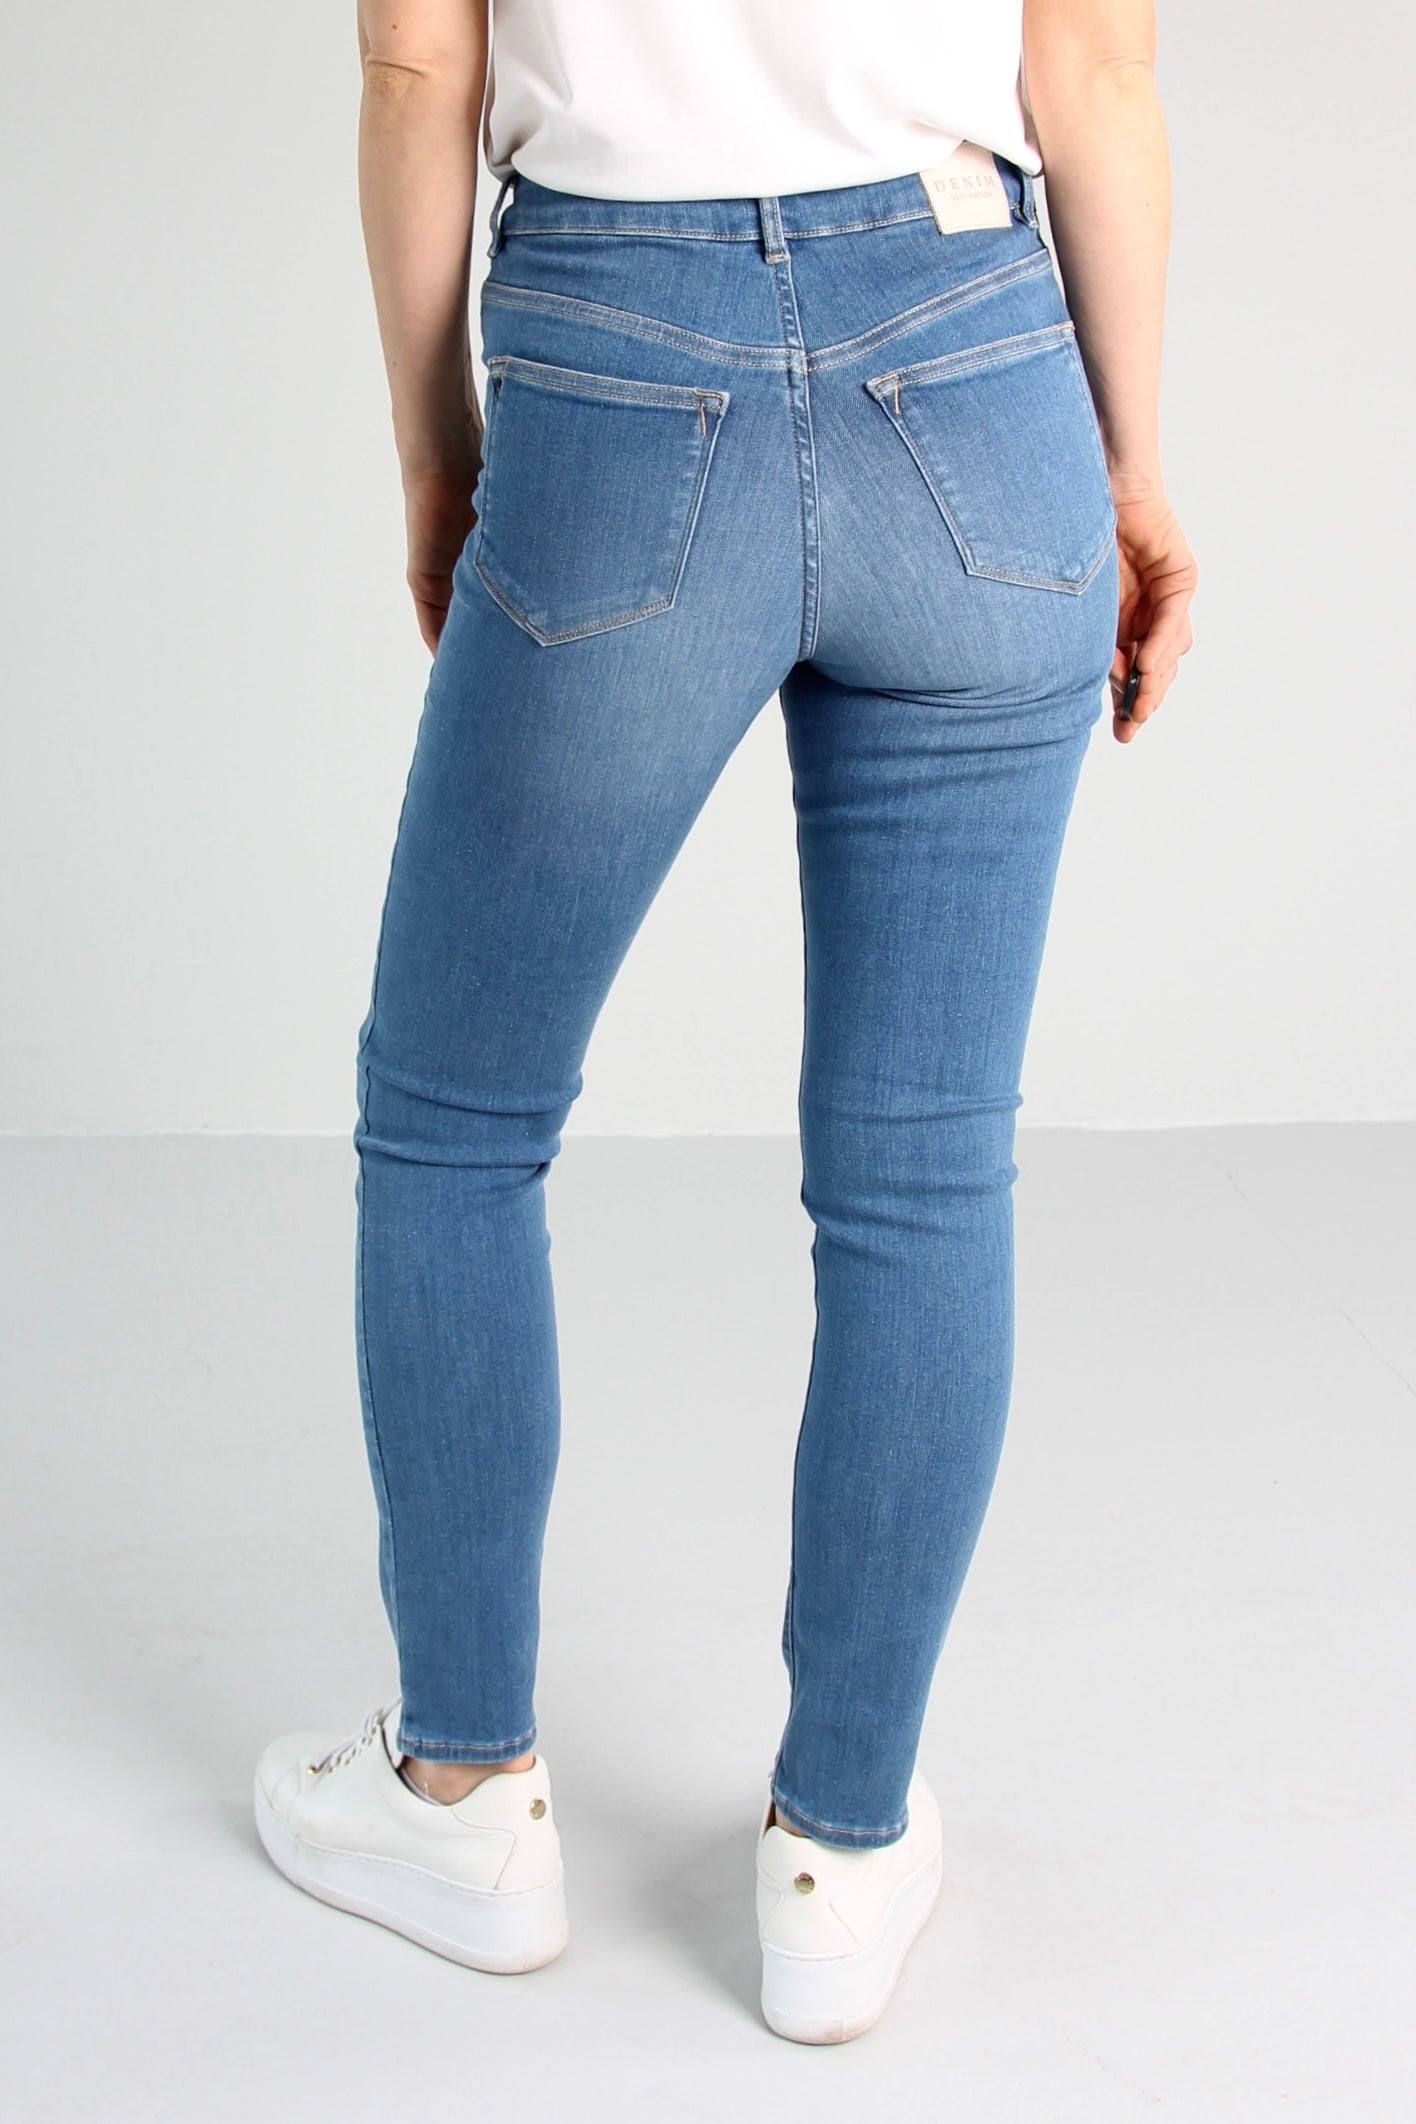 Få igjen - Ayla Sea blue Jeans - Dame - Slim  - High waist - Stretchy